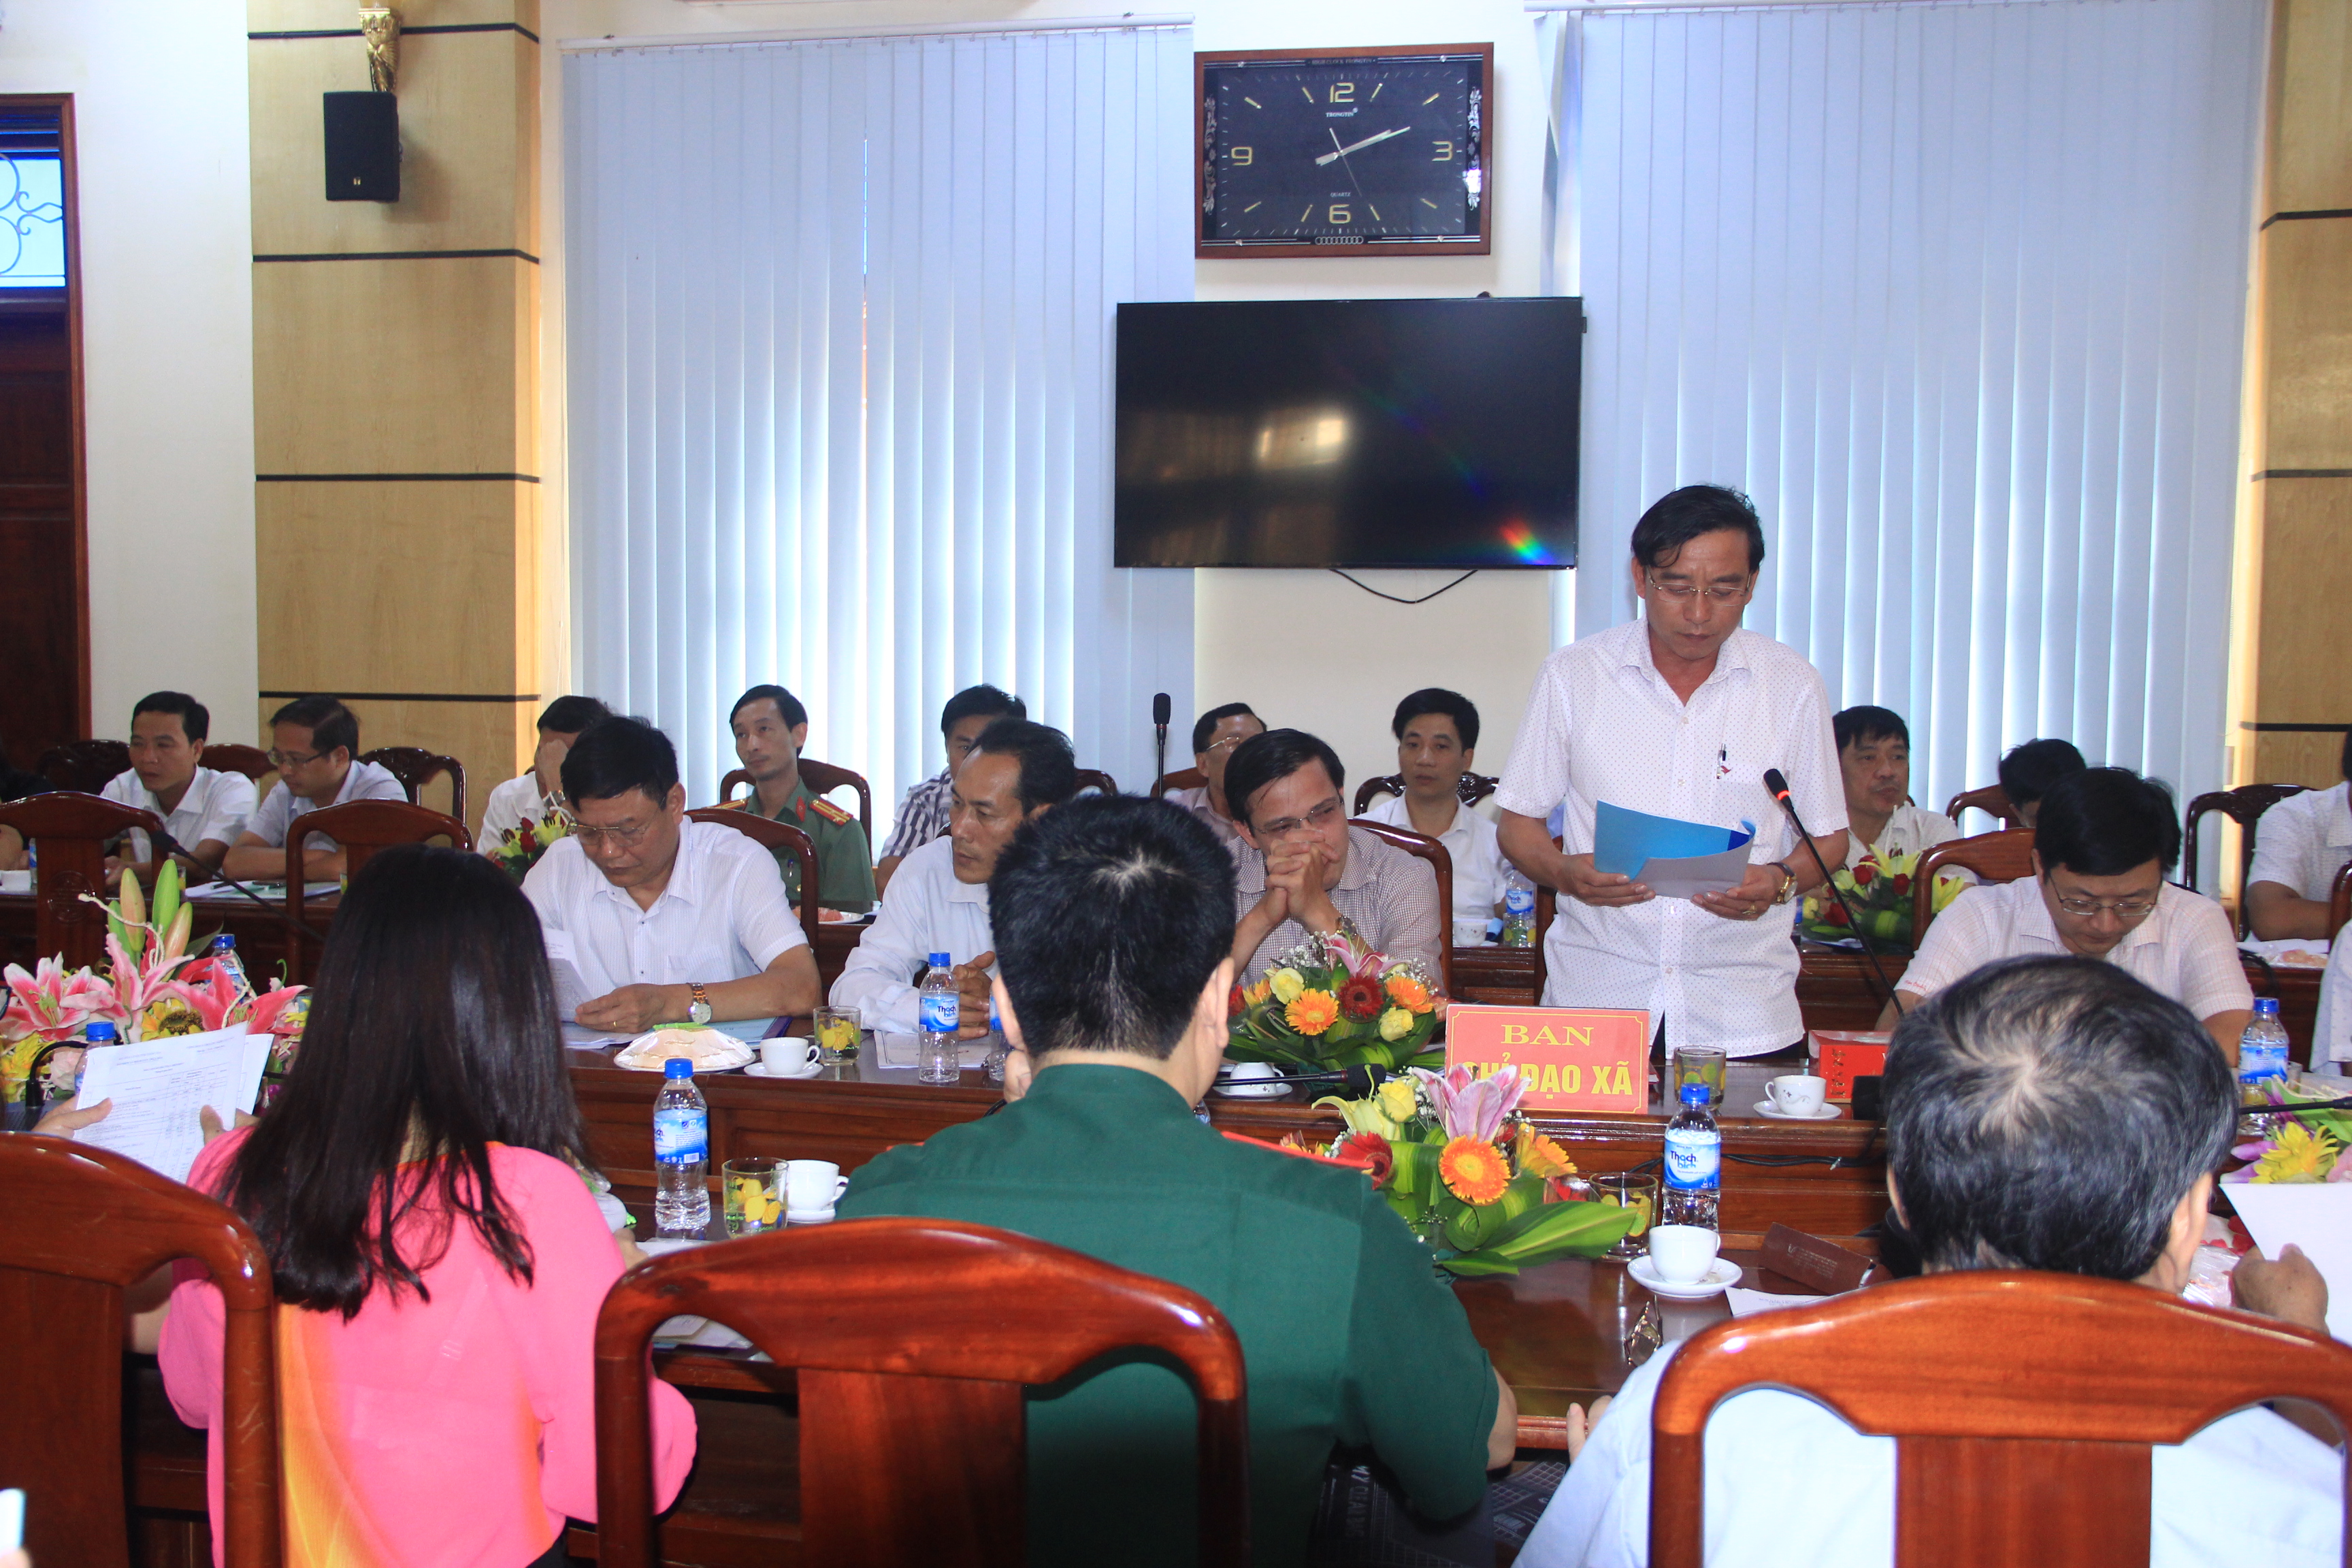 Thẩm định tiêu chí đạt chuẩn Nông thôn mới cho 3 xã của huyện Thiệu Hóa